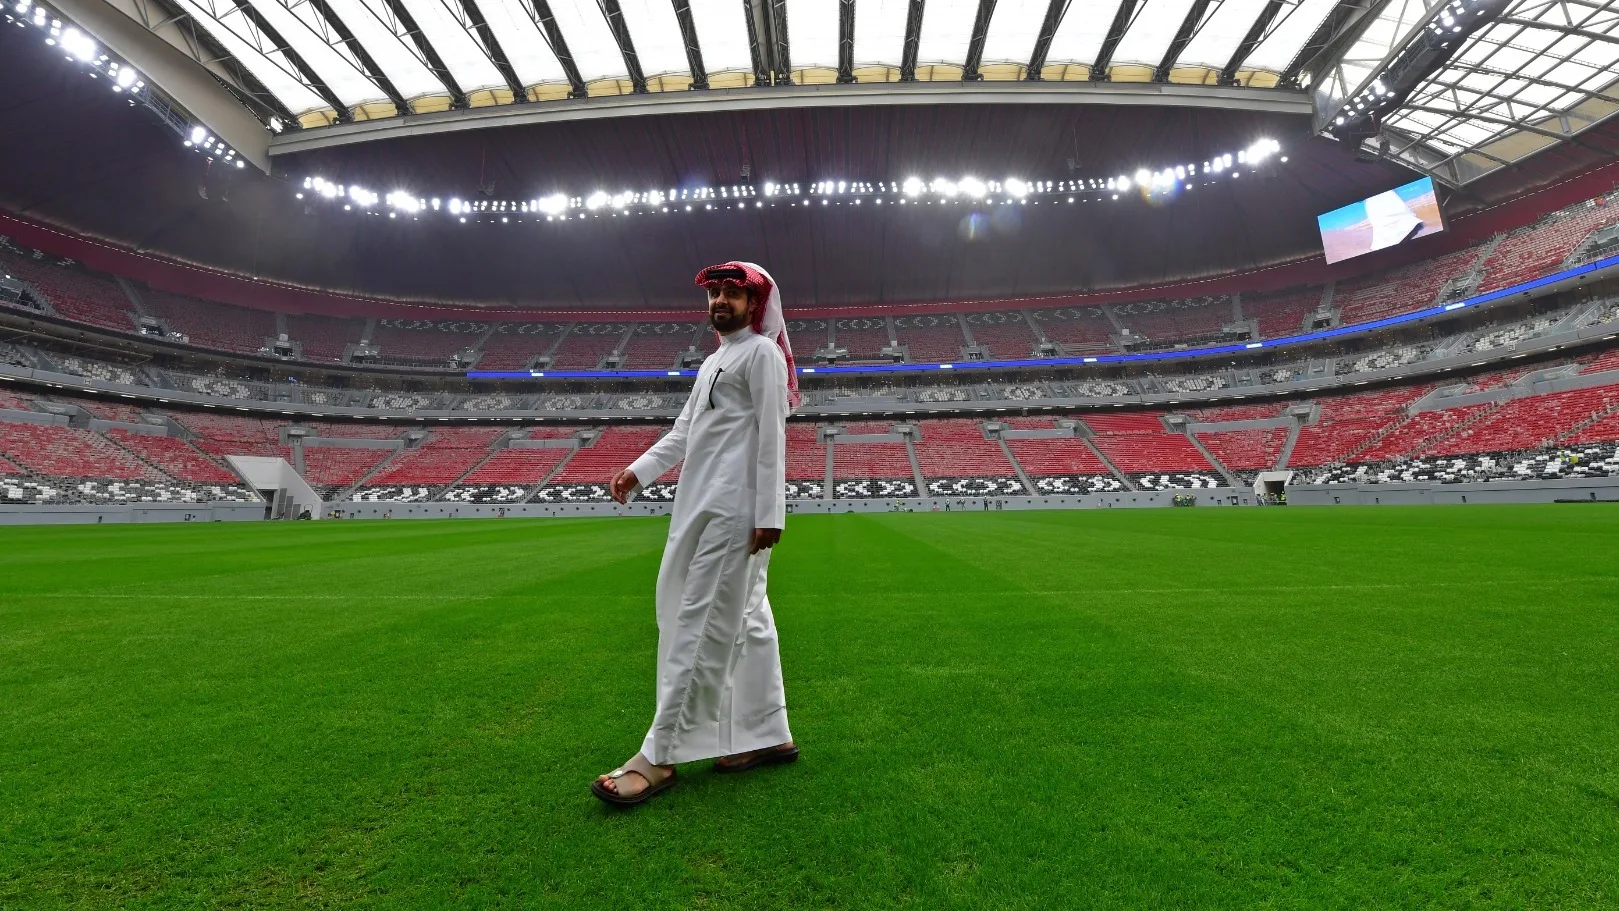 موقع لشراء تذاكر كأس العالم 2022 في قطر حسب الفئات